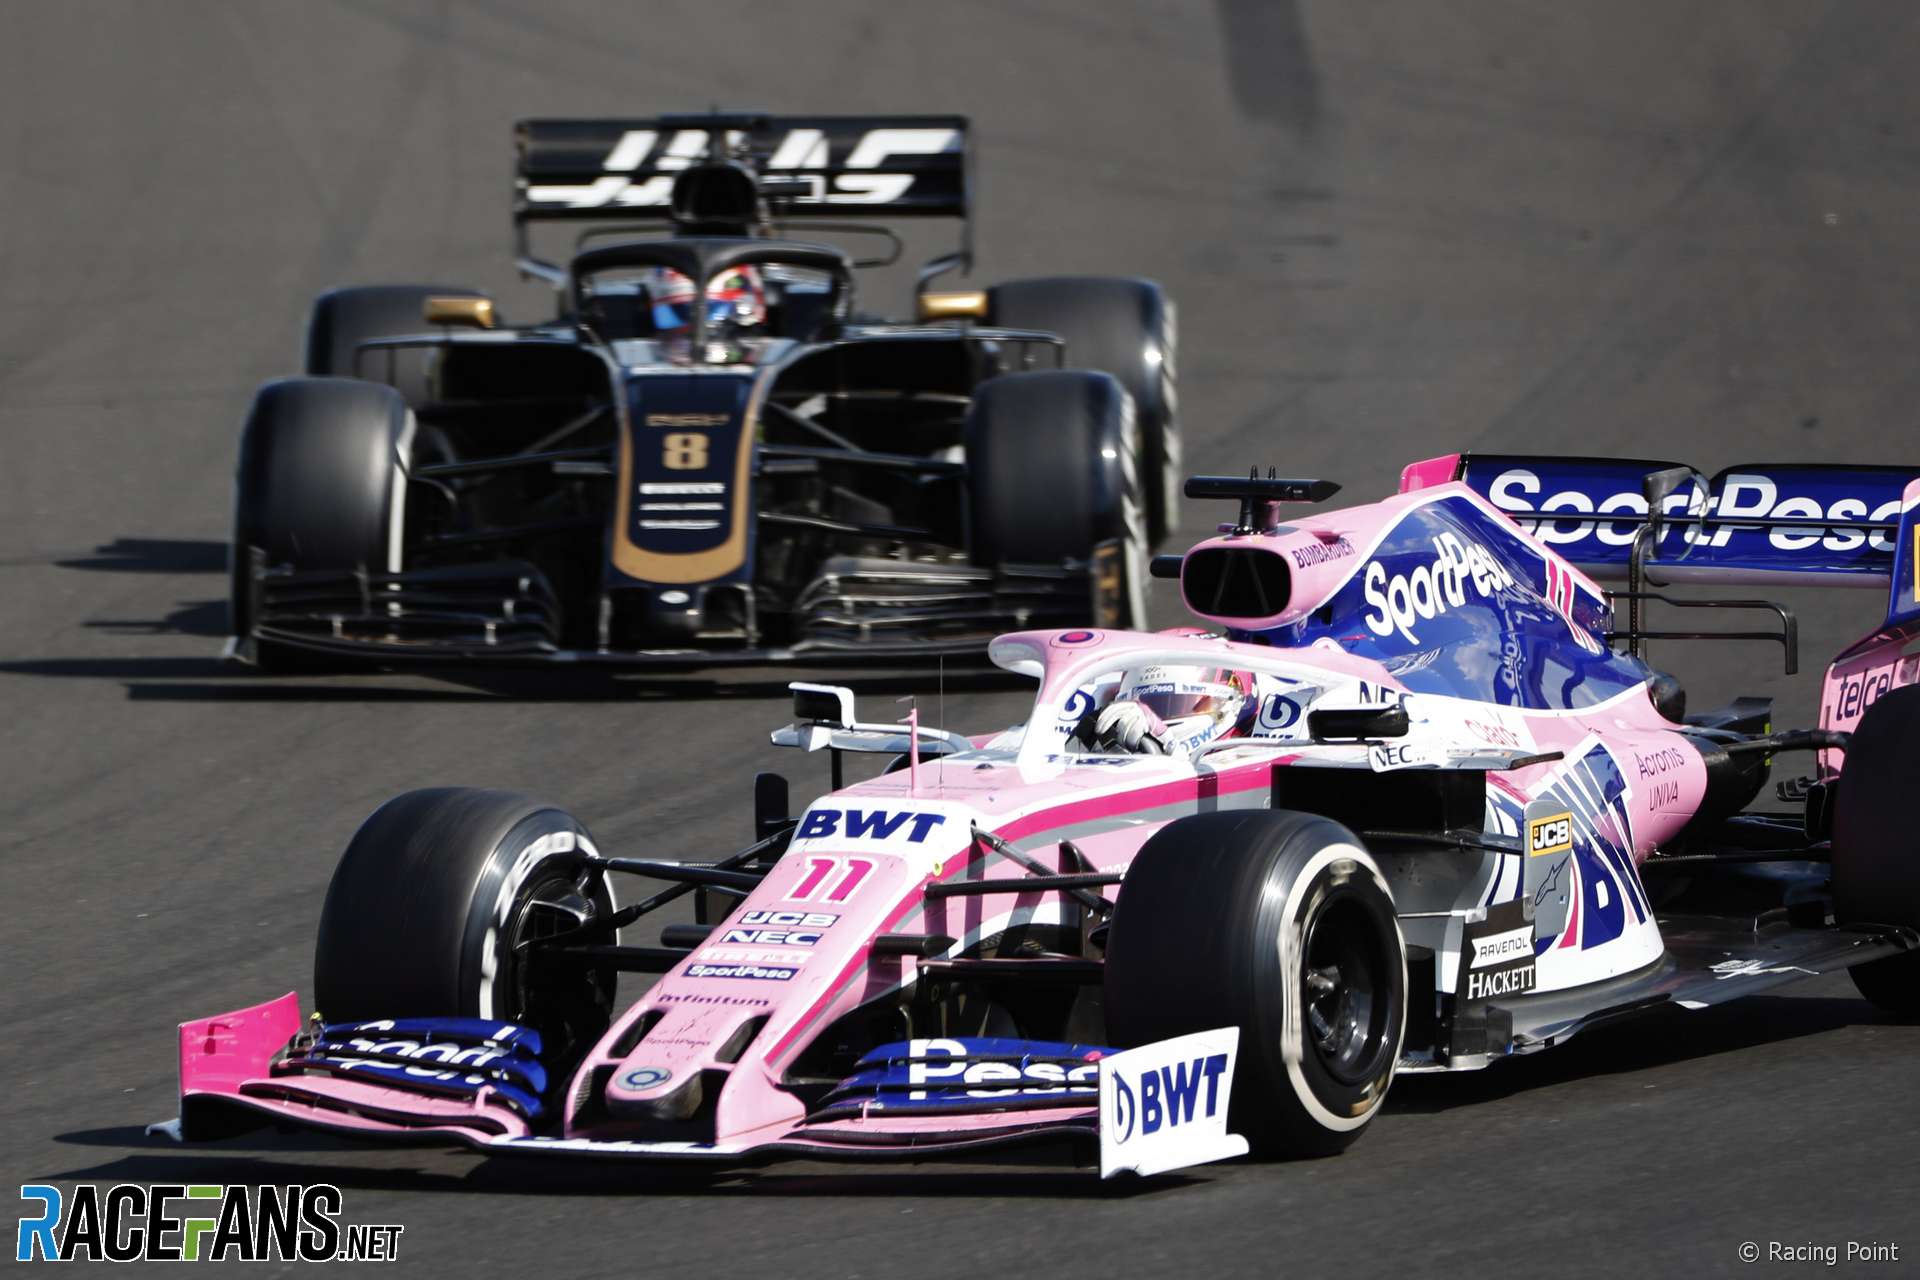 Sergio Perez, Racing Point, Hungaroring, 2019